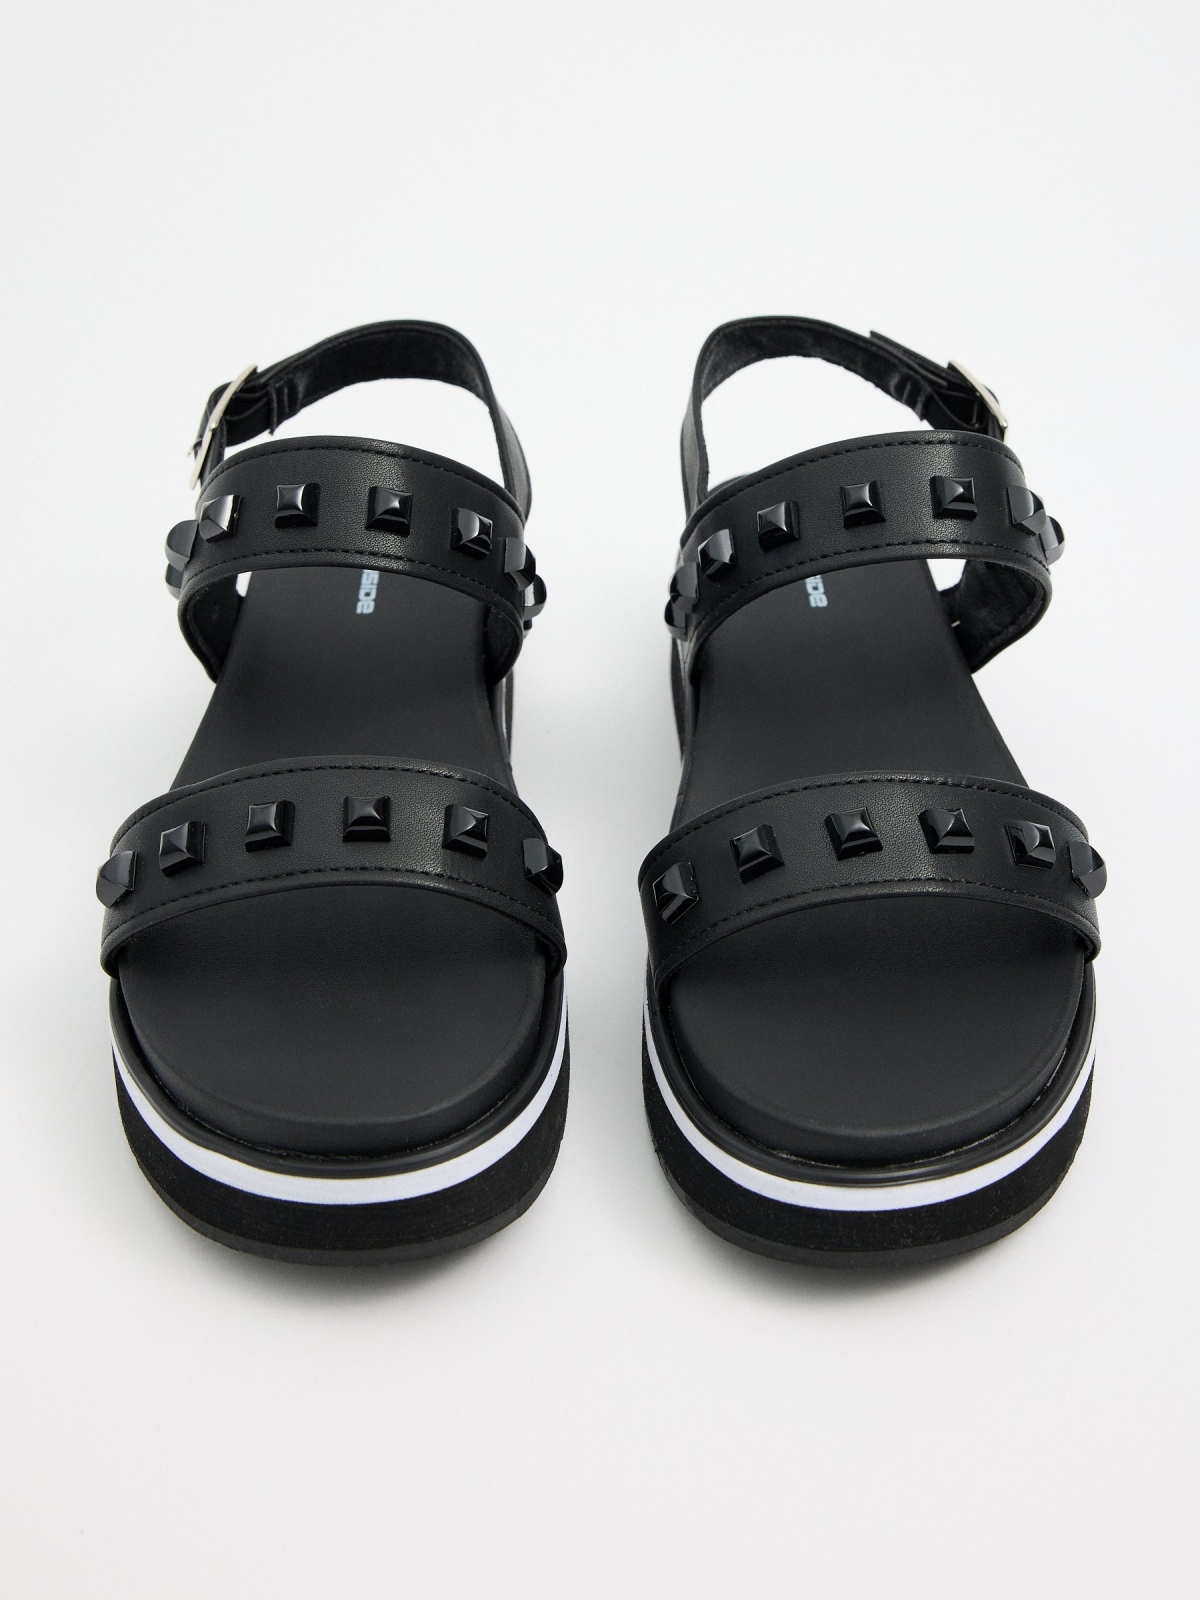 Sandália efeito couro com tachas preto vista superior